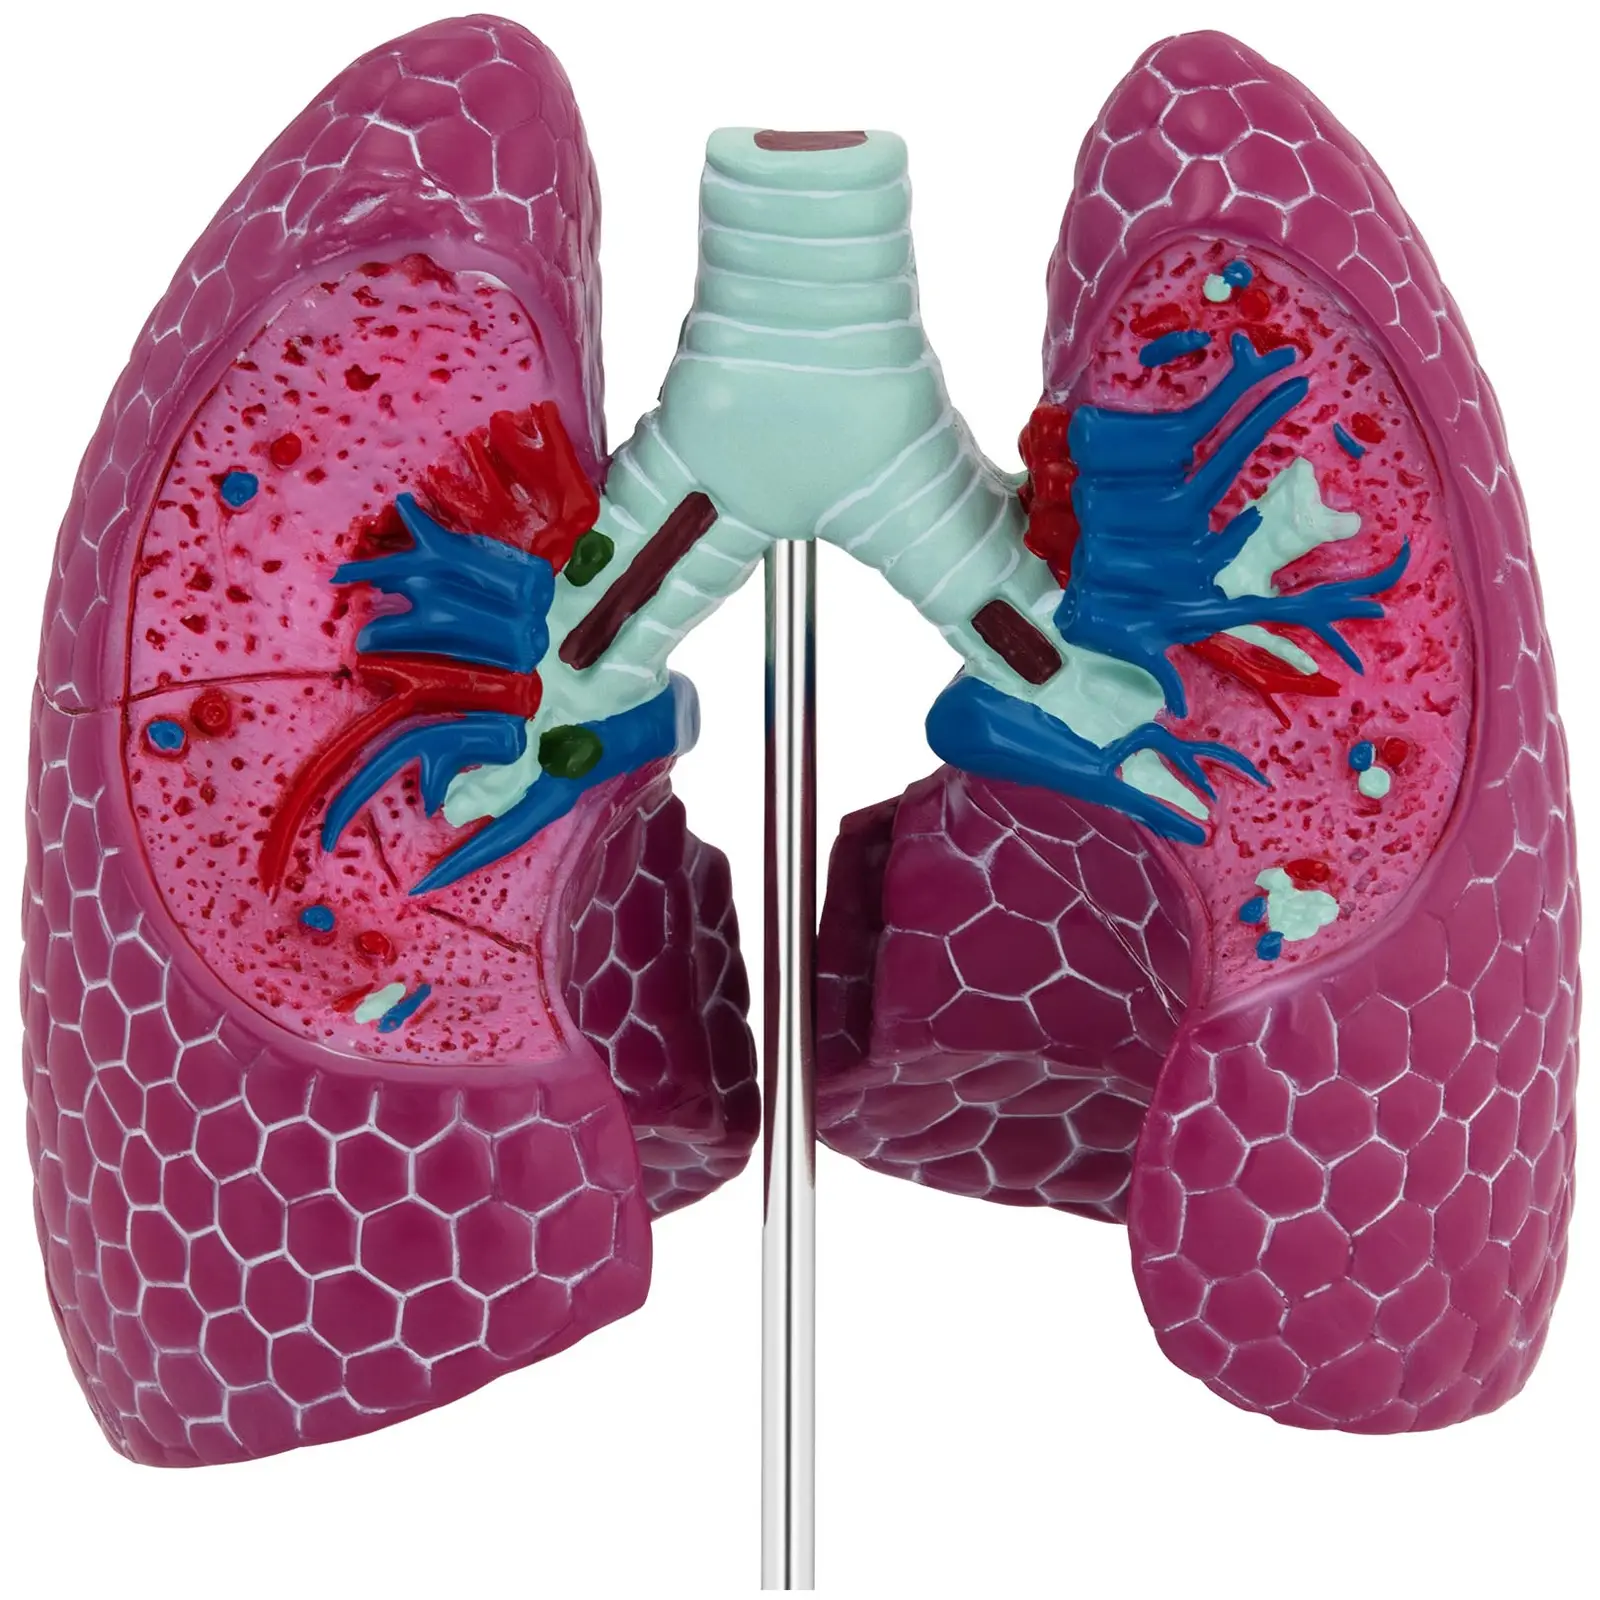 Modelo anatómico pulmonar - con patologías